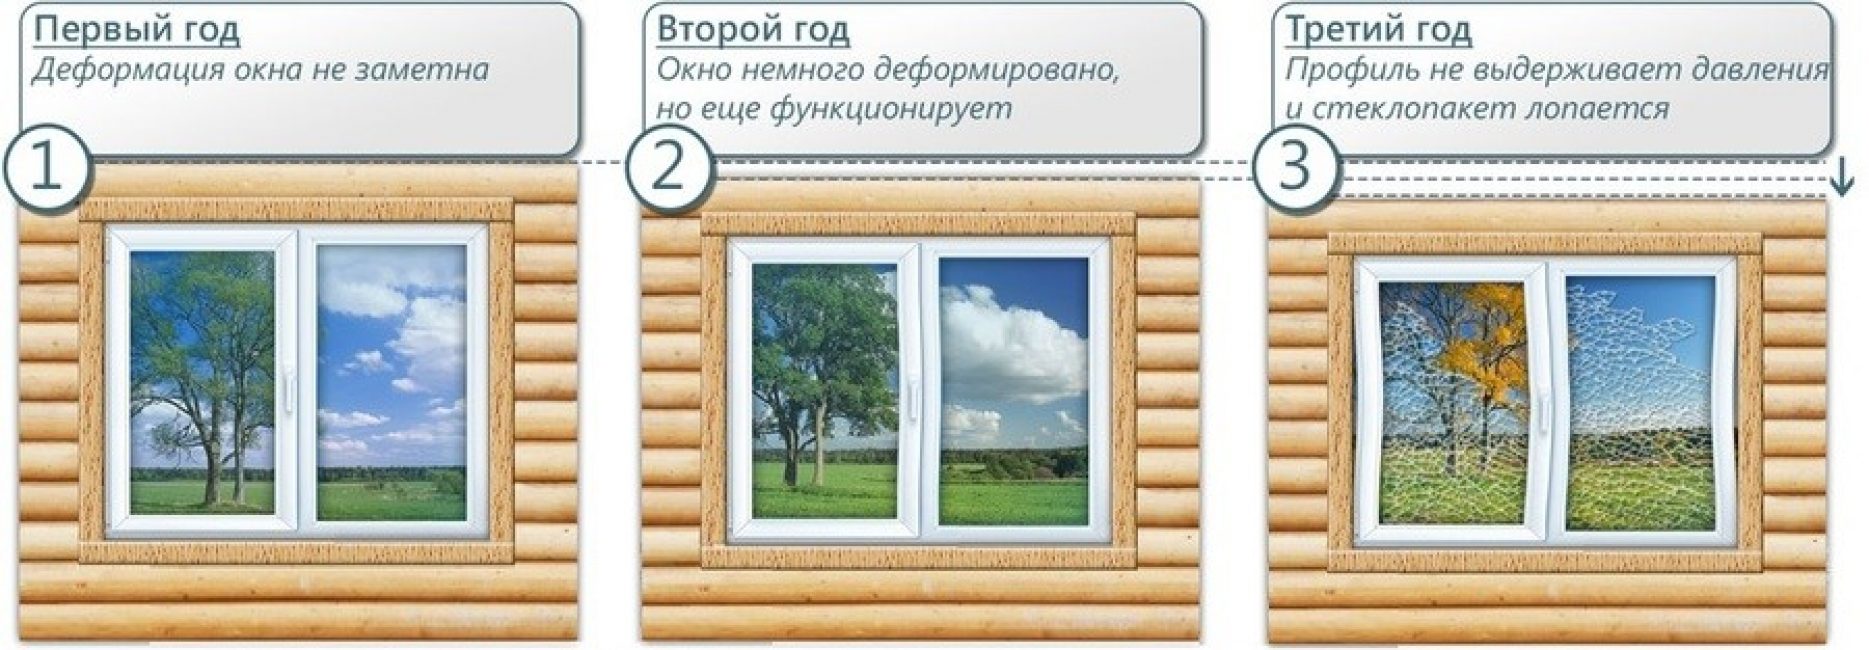 схема усадки окна в деревянном доме